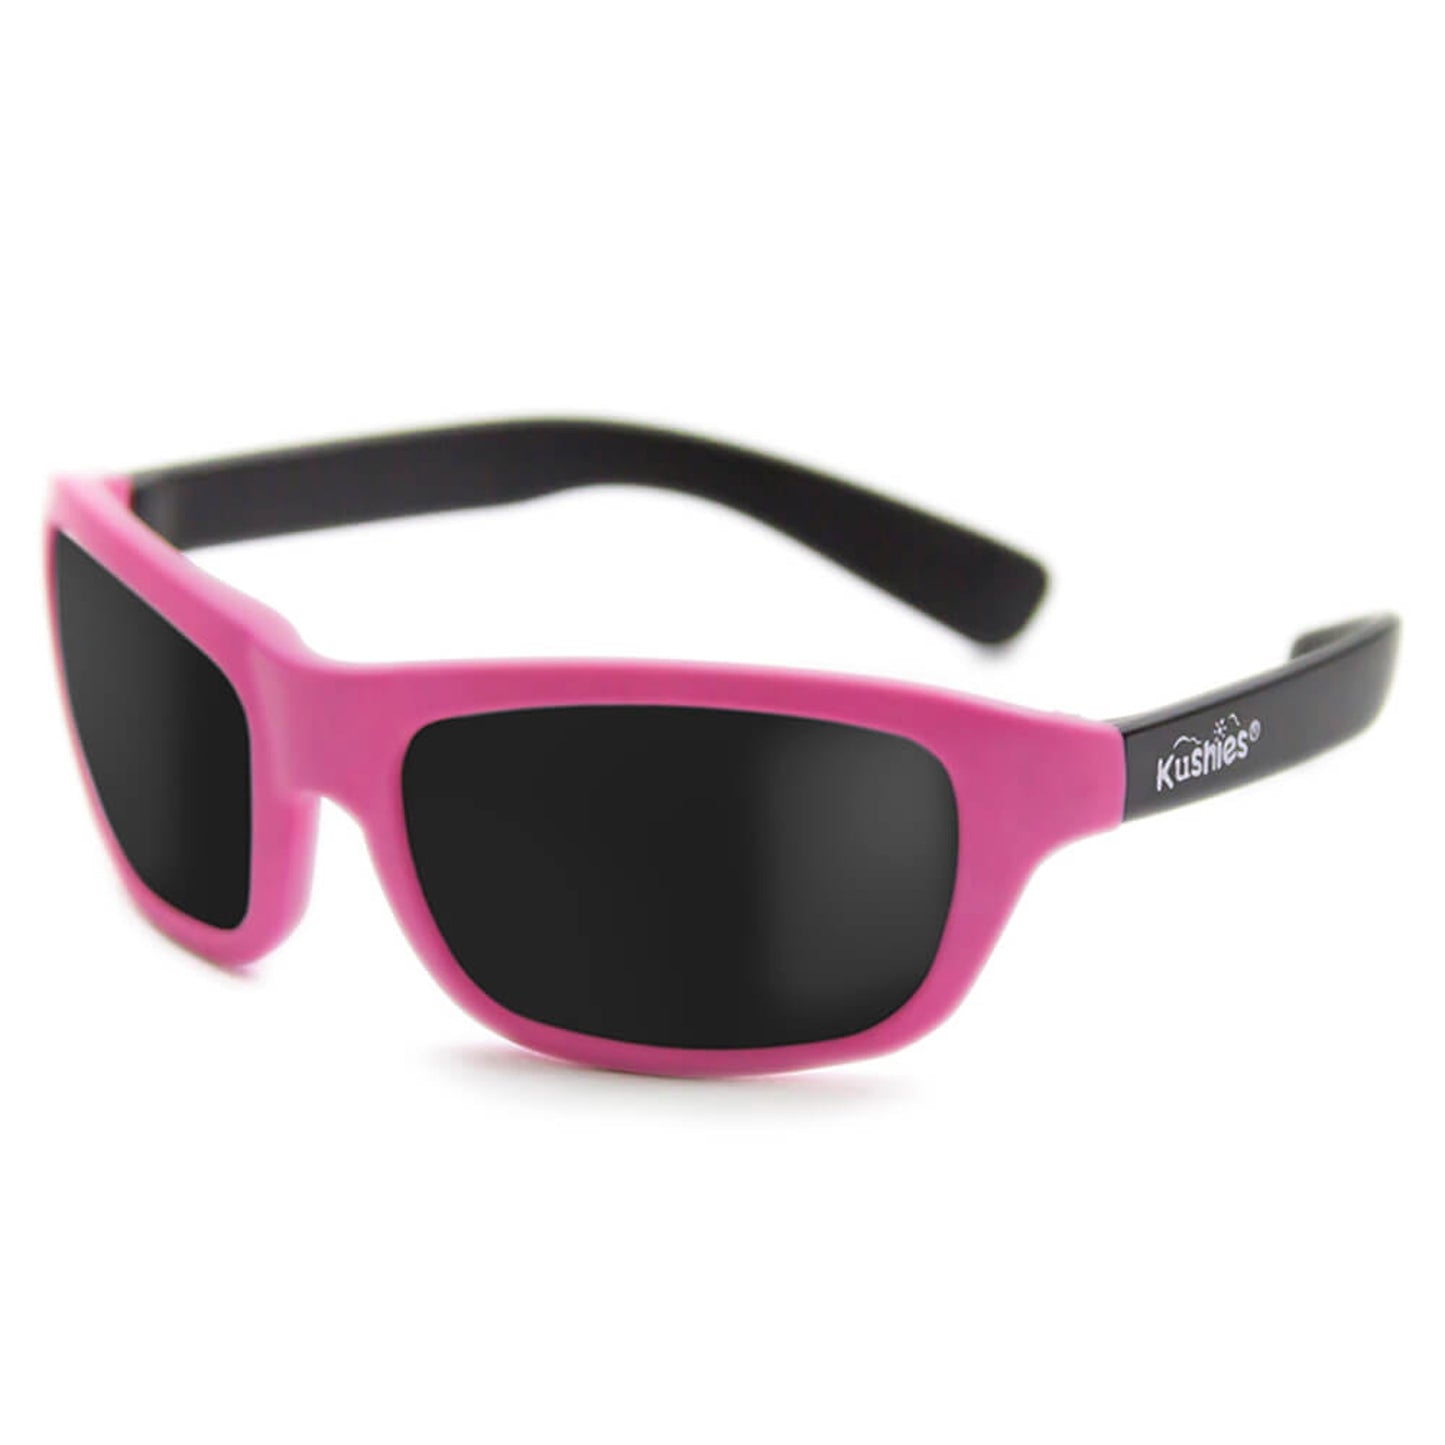 Kushies Newborn Sunglasses Pink